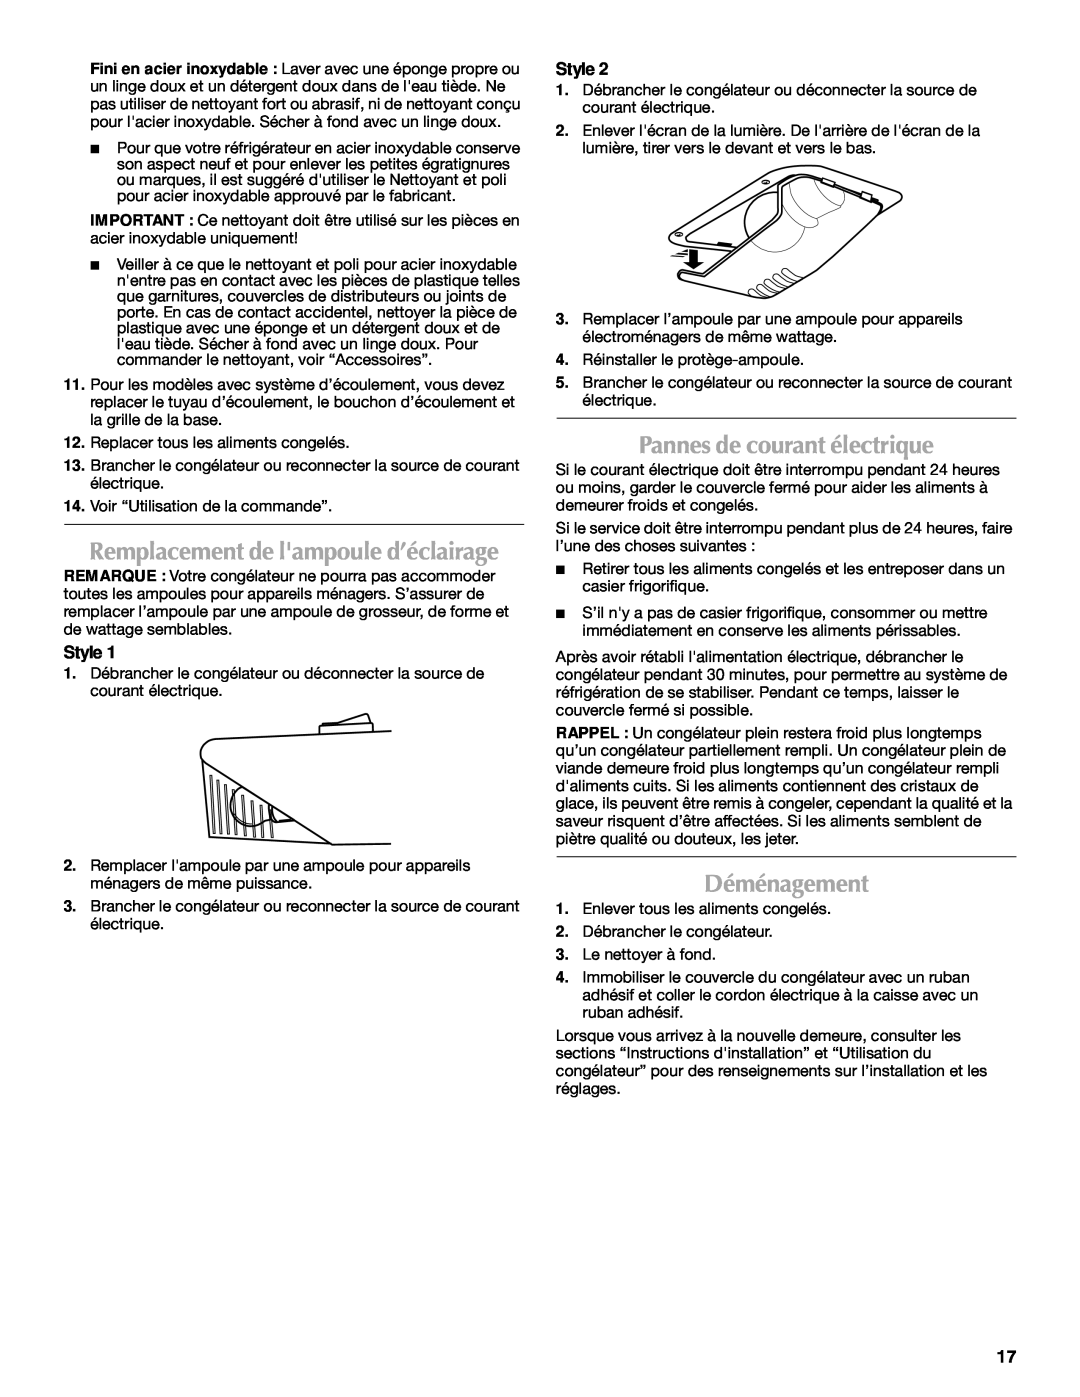 Maytag 1-82180-002 manual Pannes de courant électrique, Déménagement, Remplacement de lampoule d’éclairage, Style 